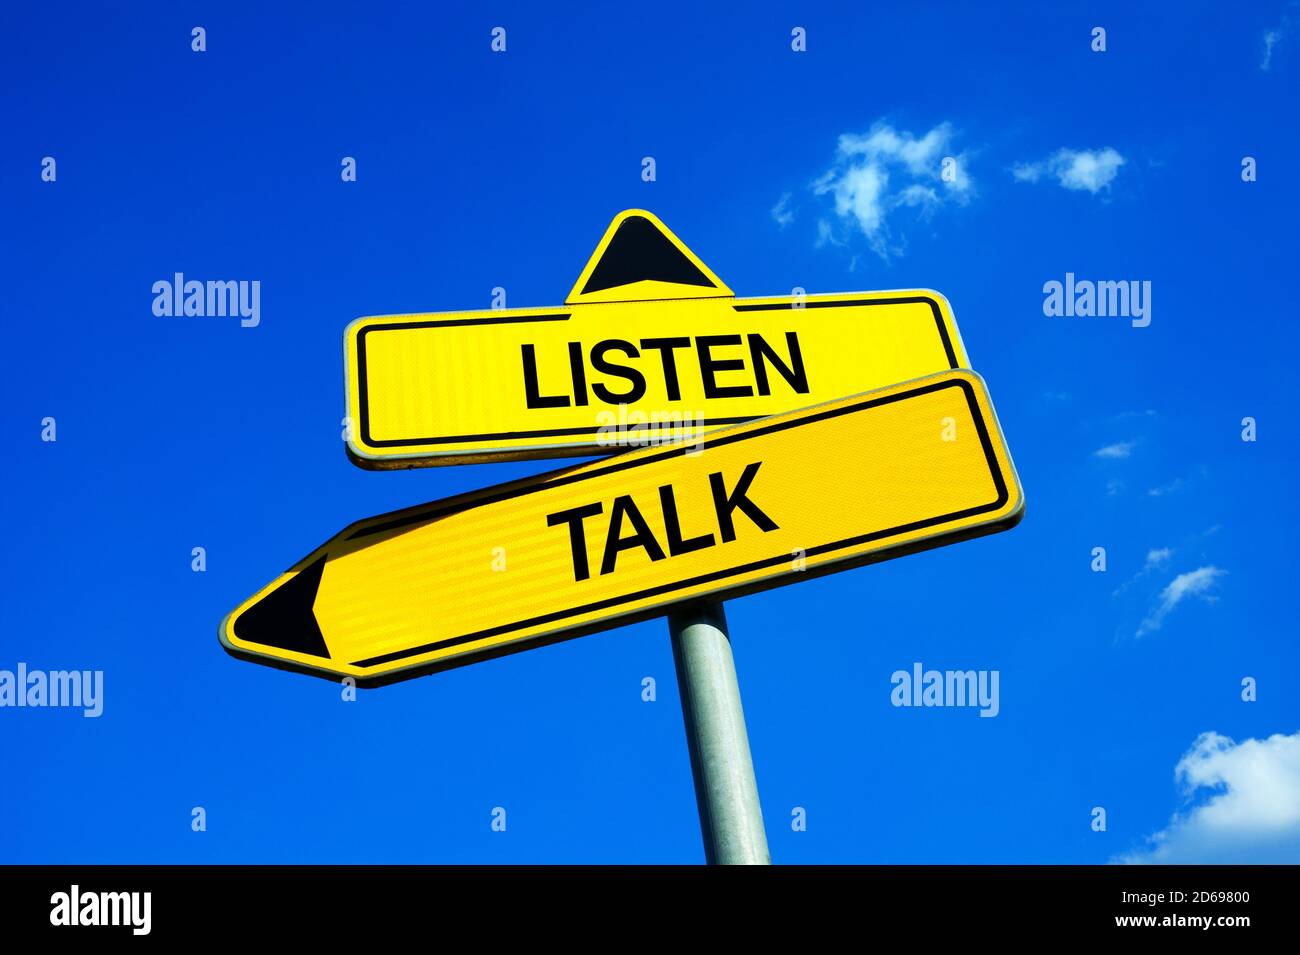 Hören vs sprechen - Verkehrszeichen mit zwei Optionen - Empathie, Verständnis und Zuhören während zwischenmenschlicher Unterhaltung vs egozentrische sprechen, speakin Stockfoto